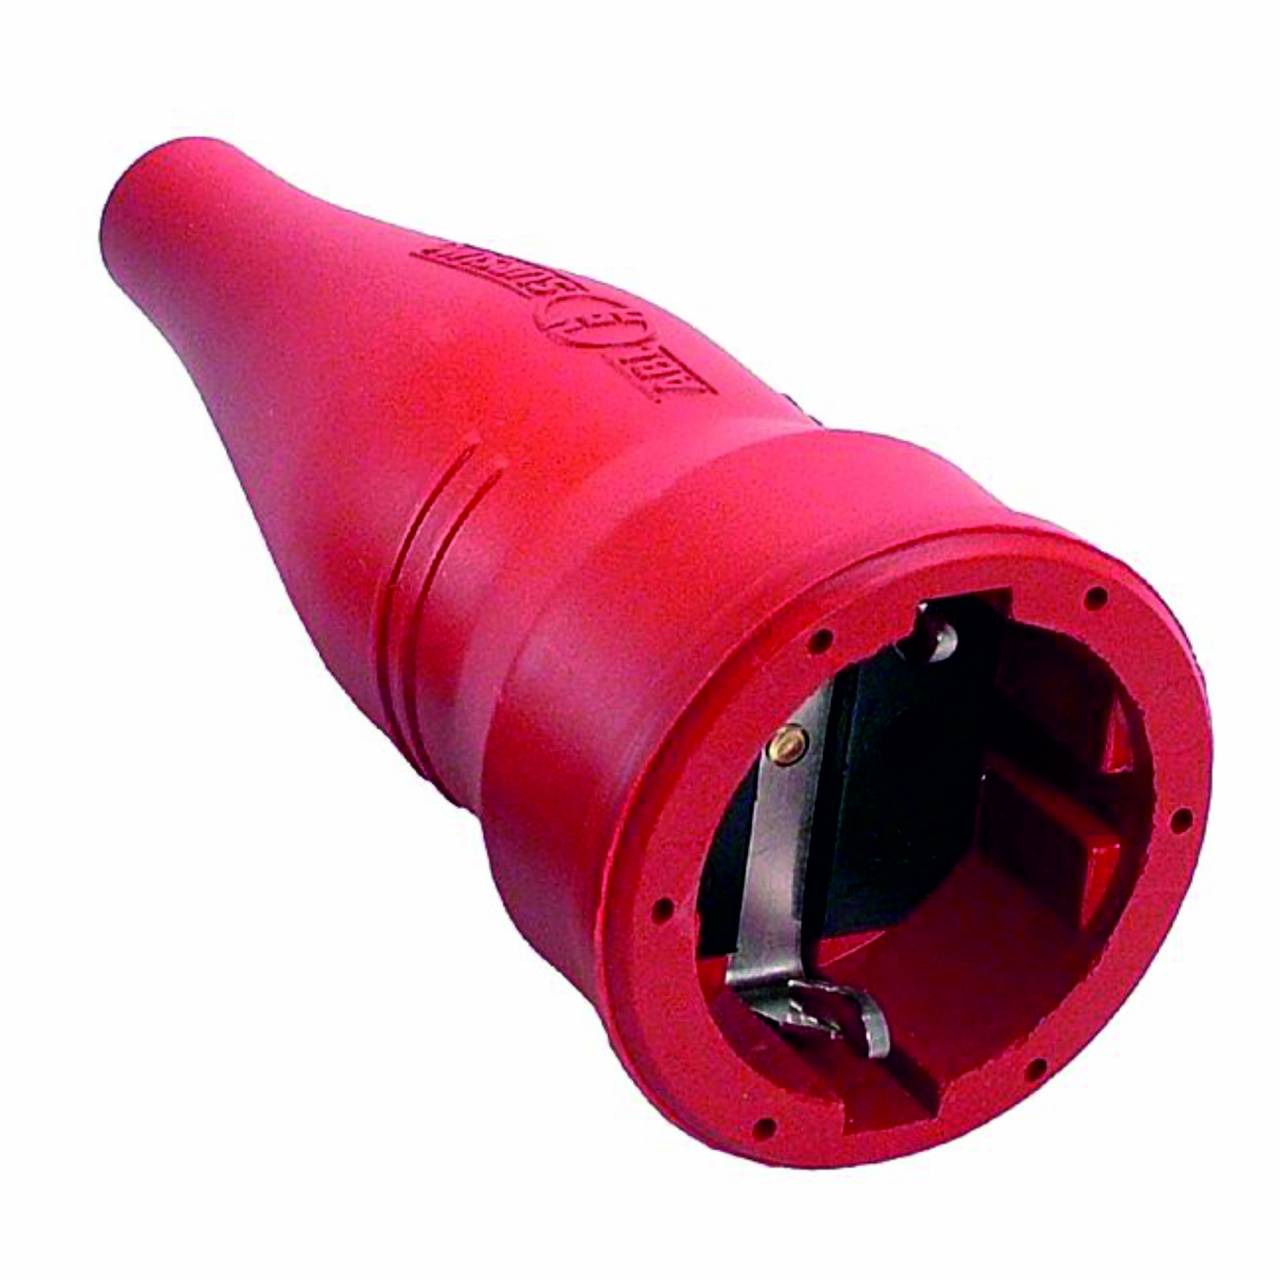 Schutzkontakt-Gummi-Kupplung, rot, 230V / 16A, Innenbereich